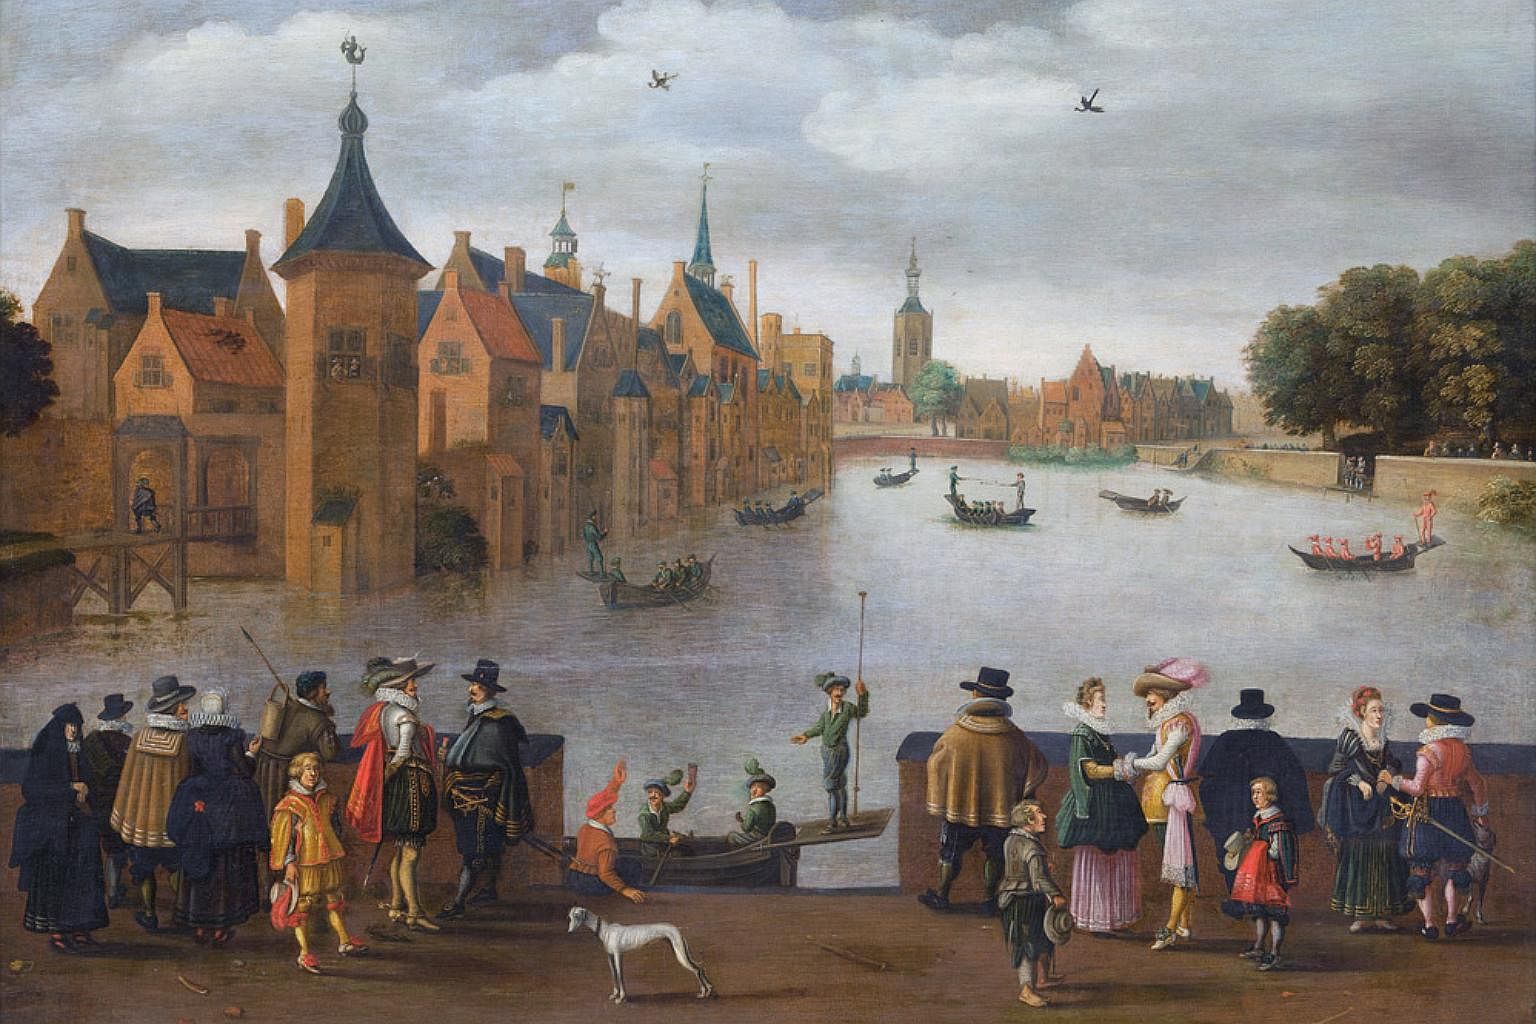 Начало 18 века в европе. Лейден 17 век. Гаага 17 век. Англия 16 в. Нидерланды 15 16 век.